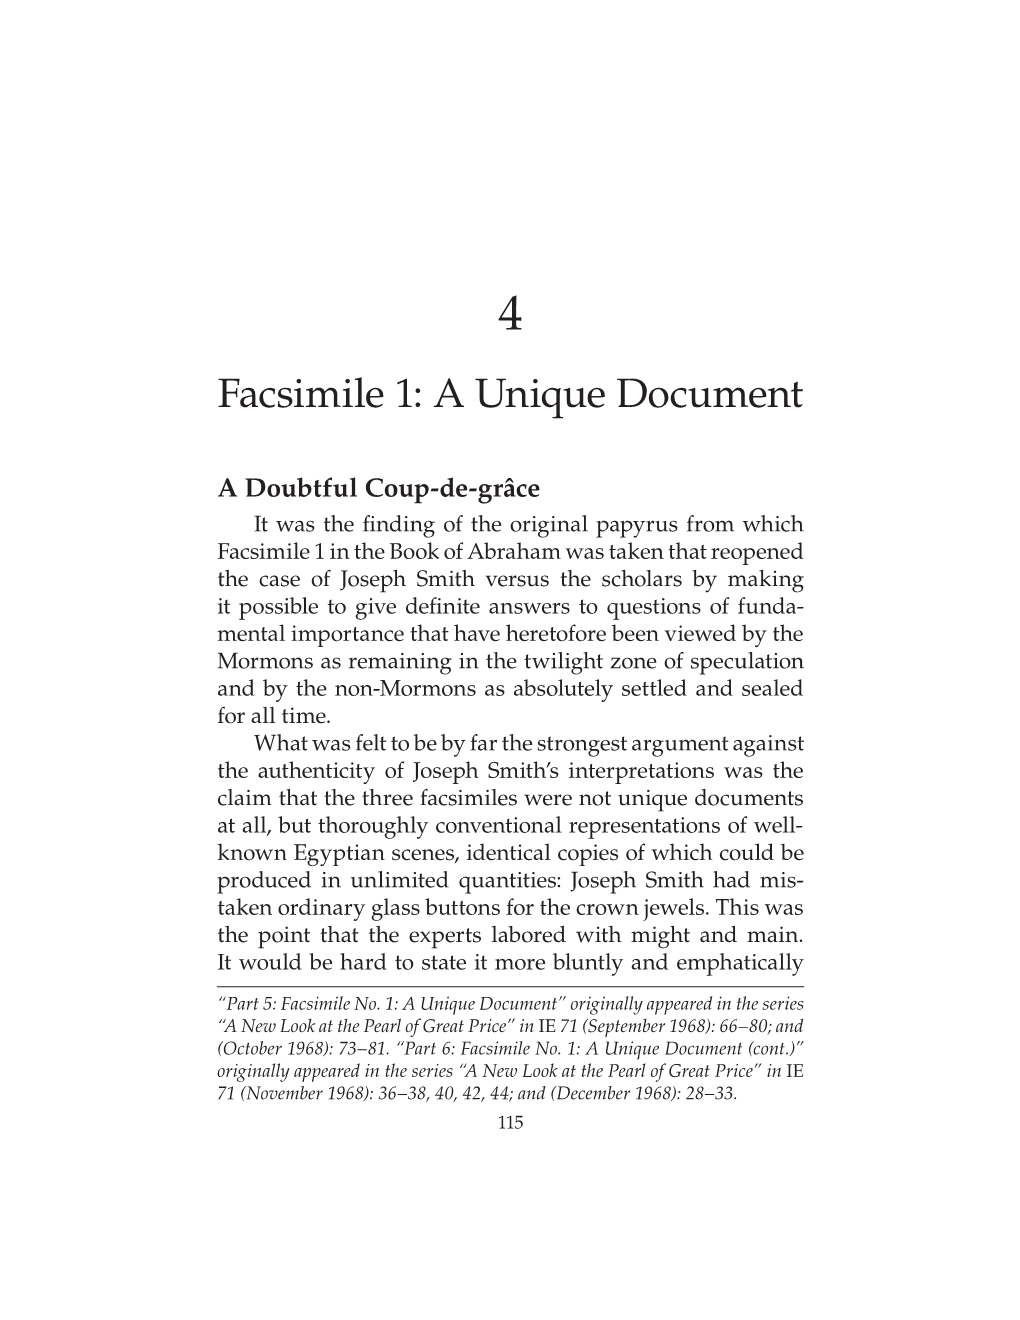 Facsimile 1: a Unique Document